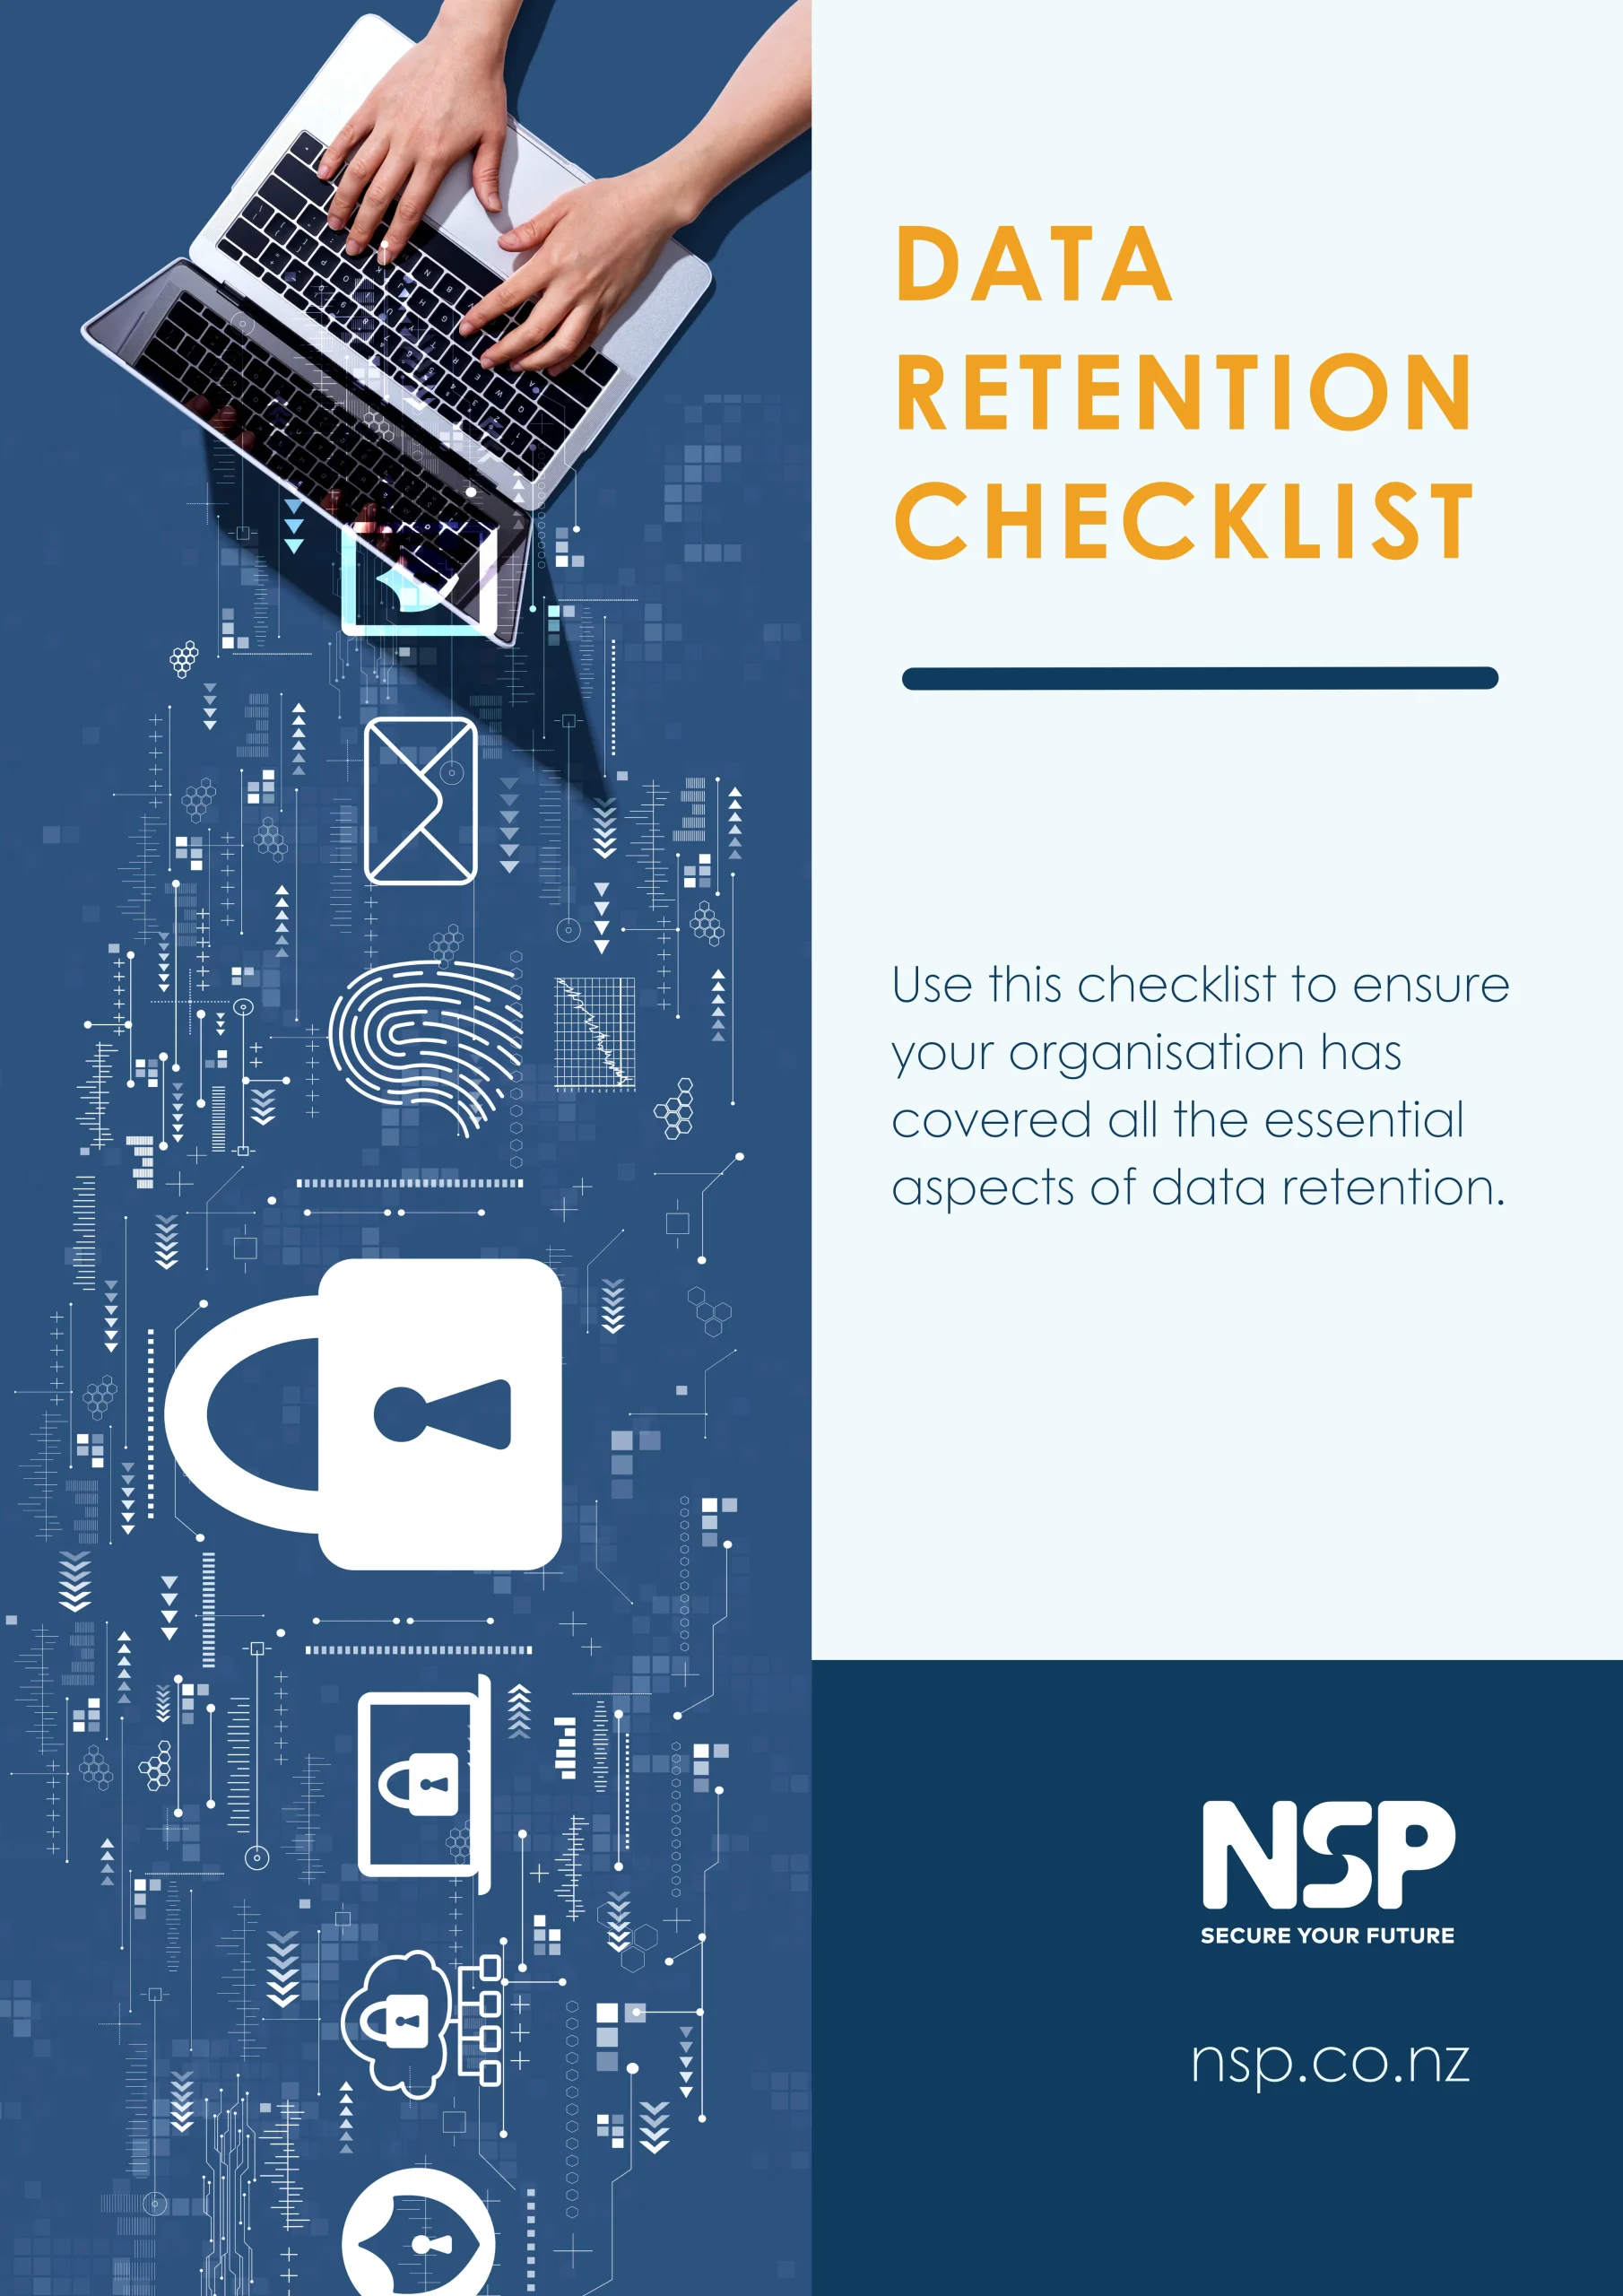 Data retention checklist